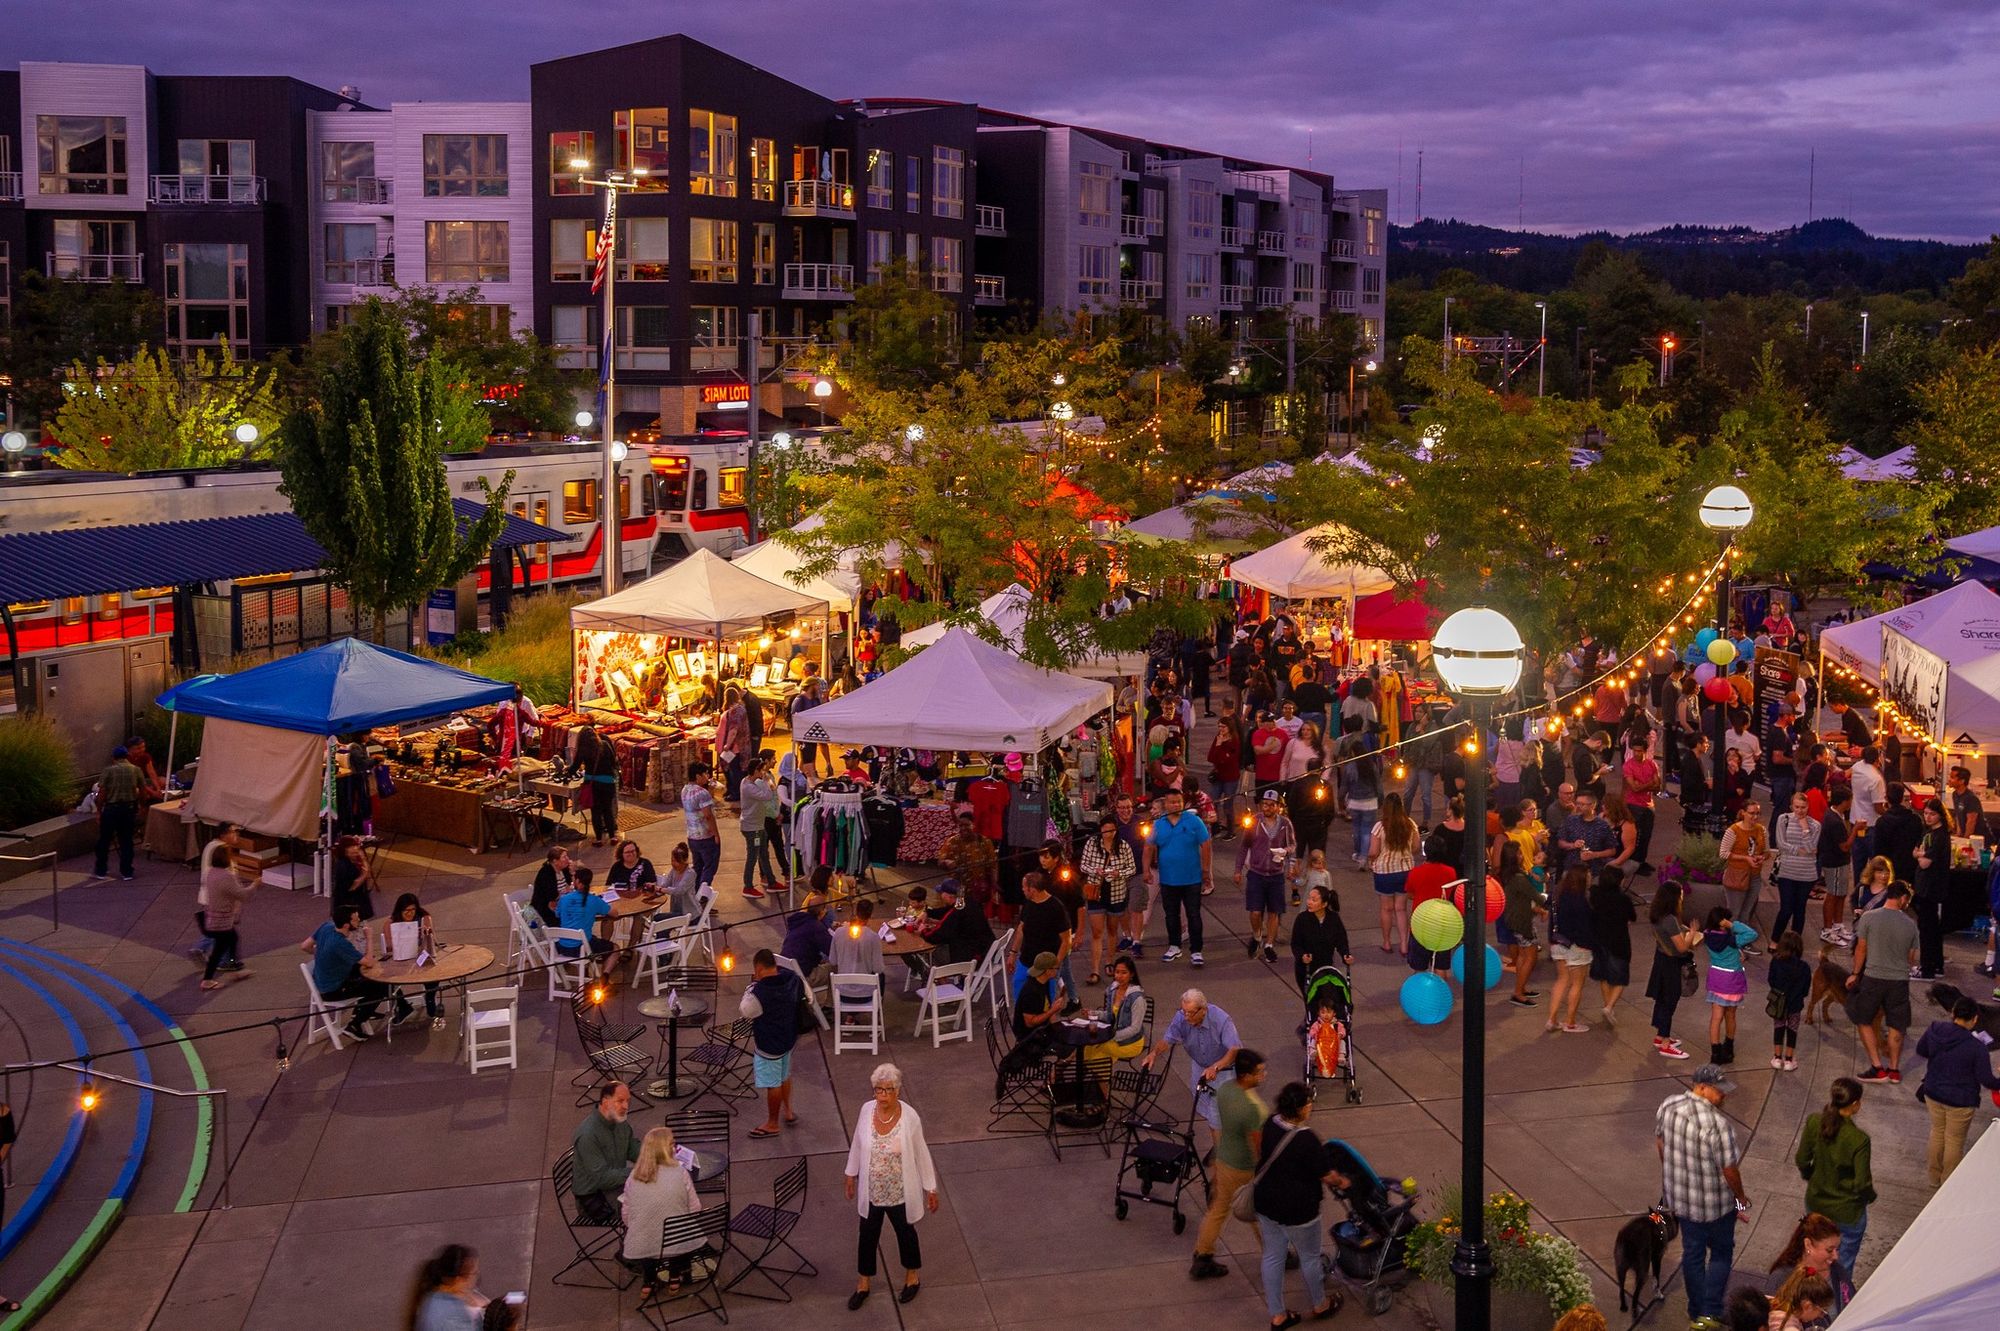 How to Find the Best Neighbourhoods in Beaverton, Oregon